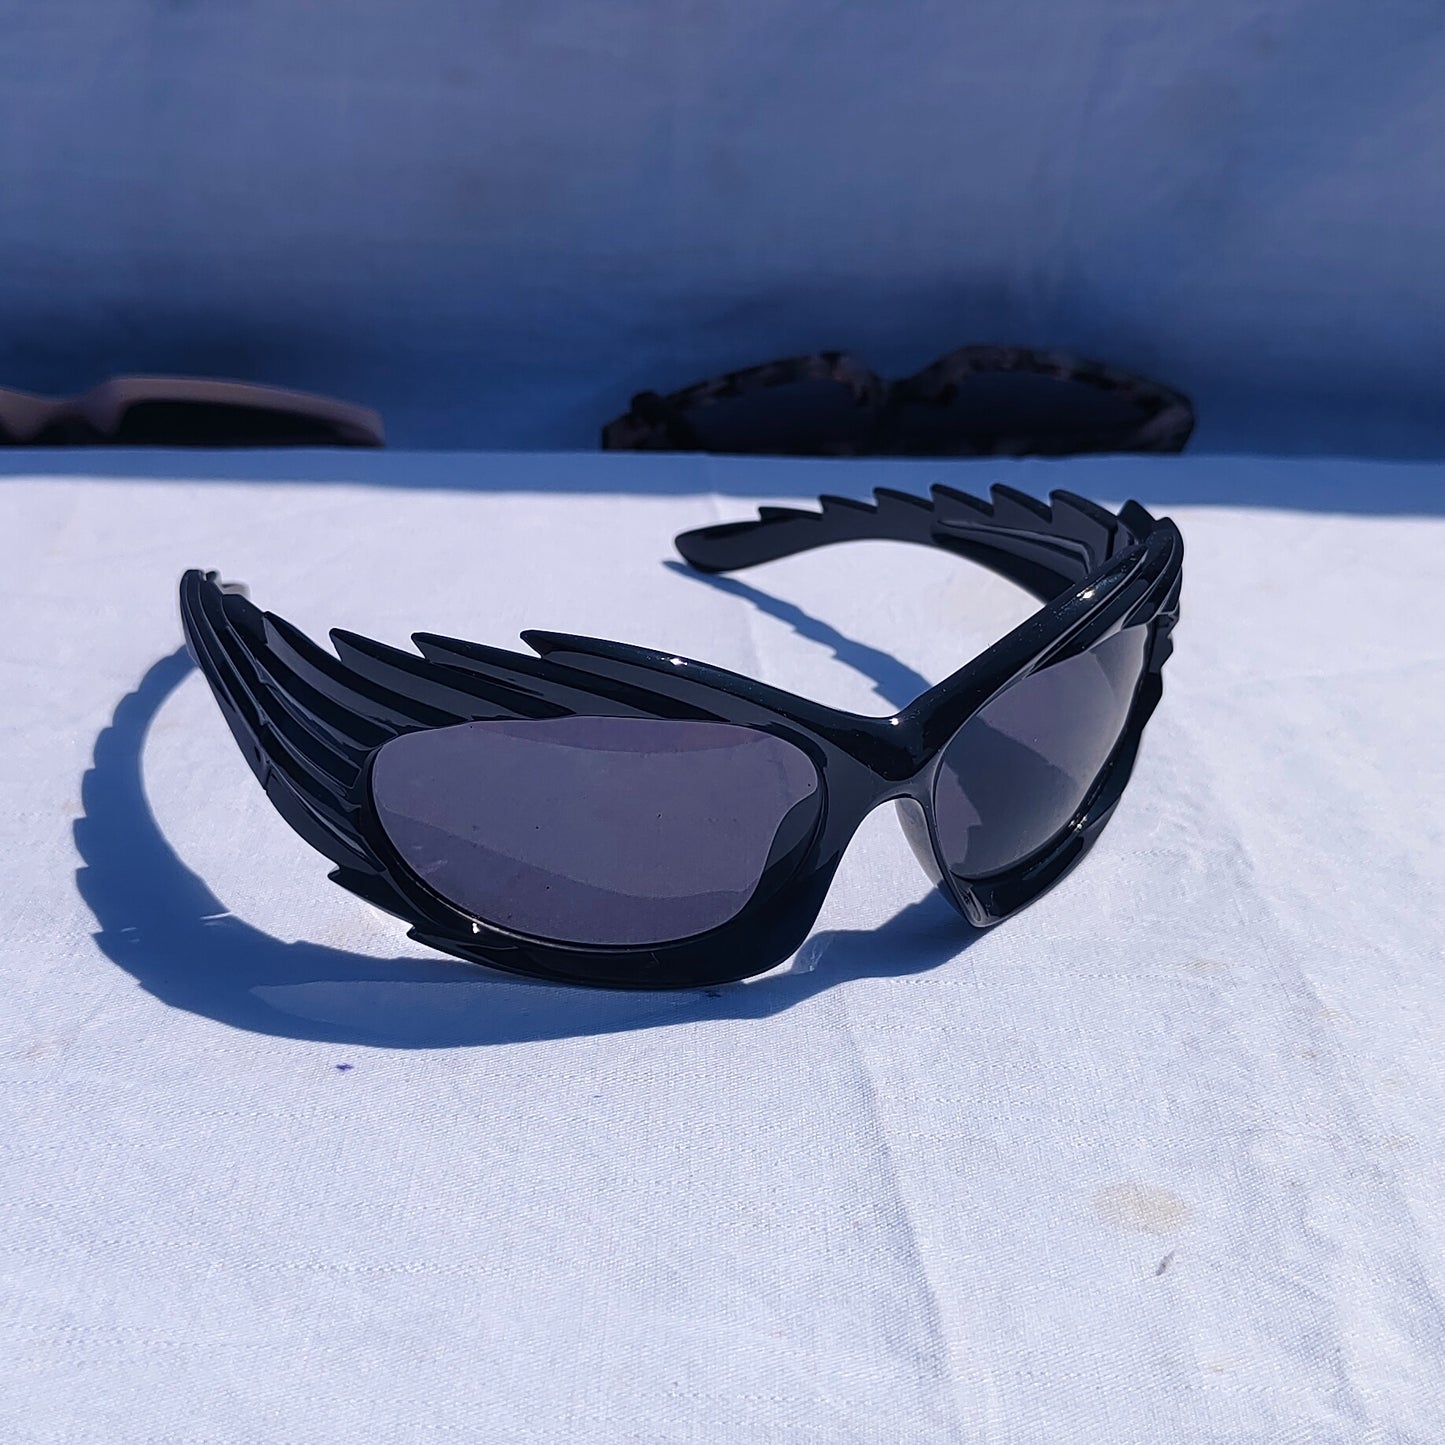 Futuristic unisex sunglasses